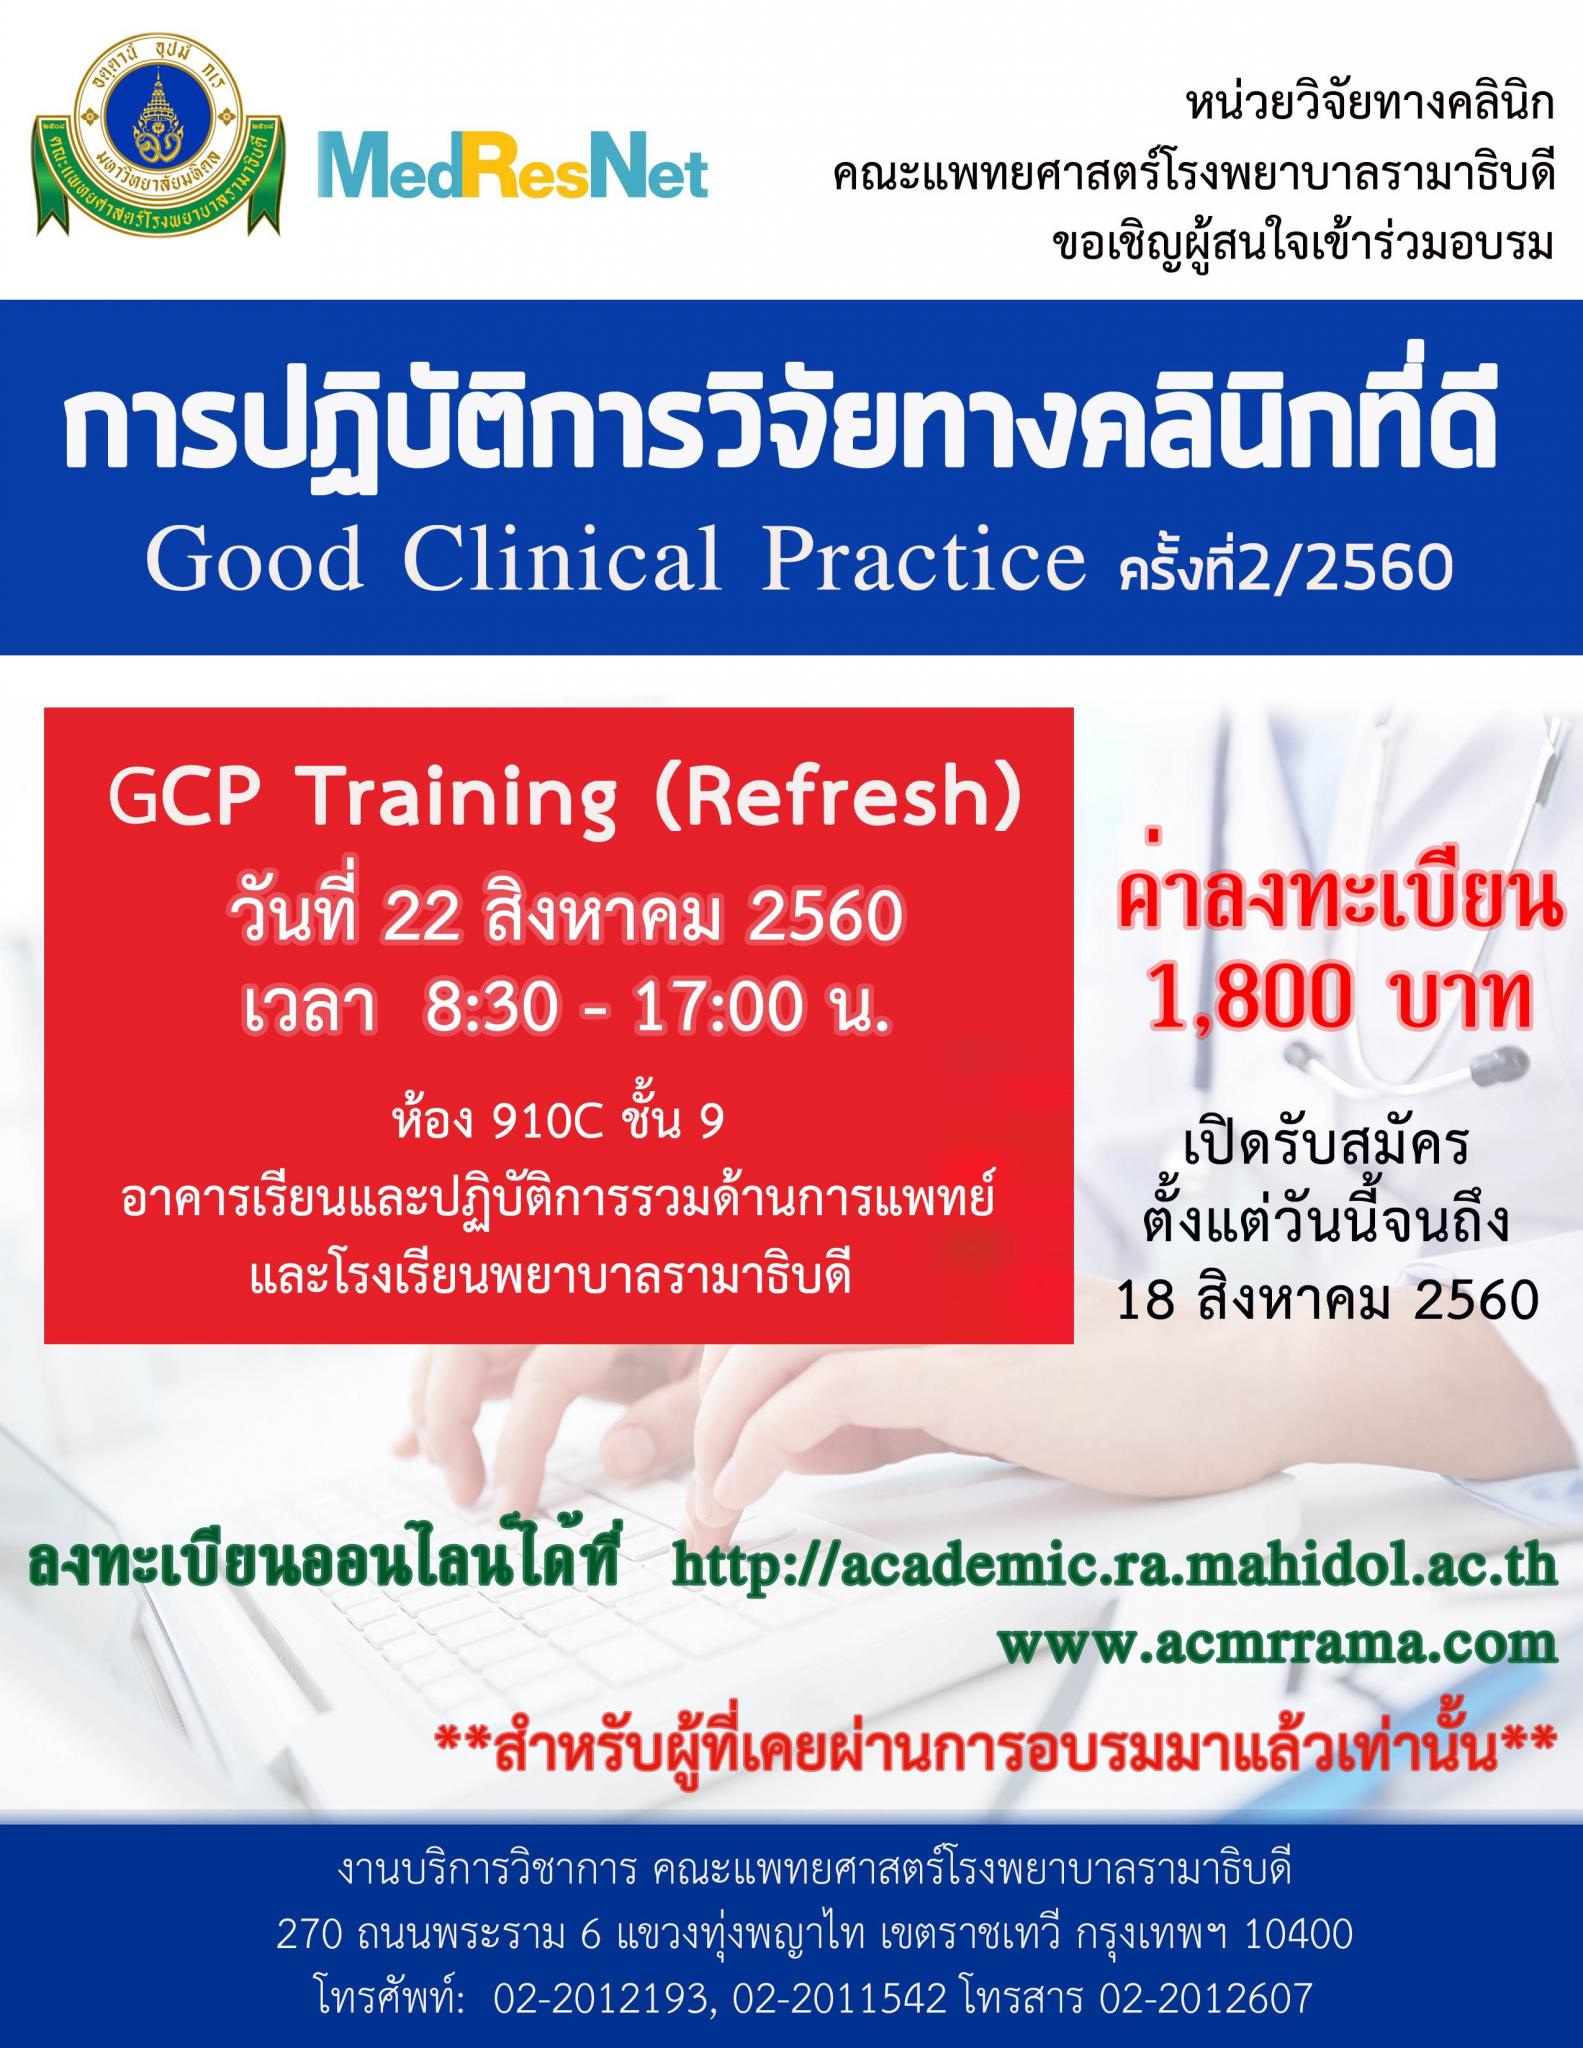 การปฏิบัติการวิจัยทางคลินิกที่ดี Good Clinical Practice (GCP) รุ่นที่ 2/2560